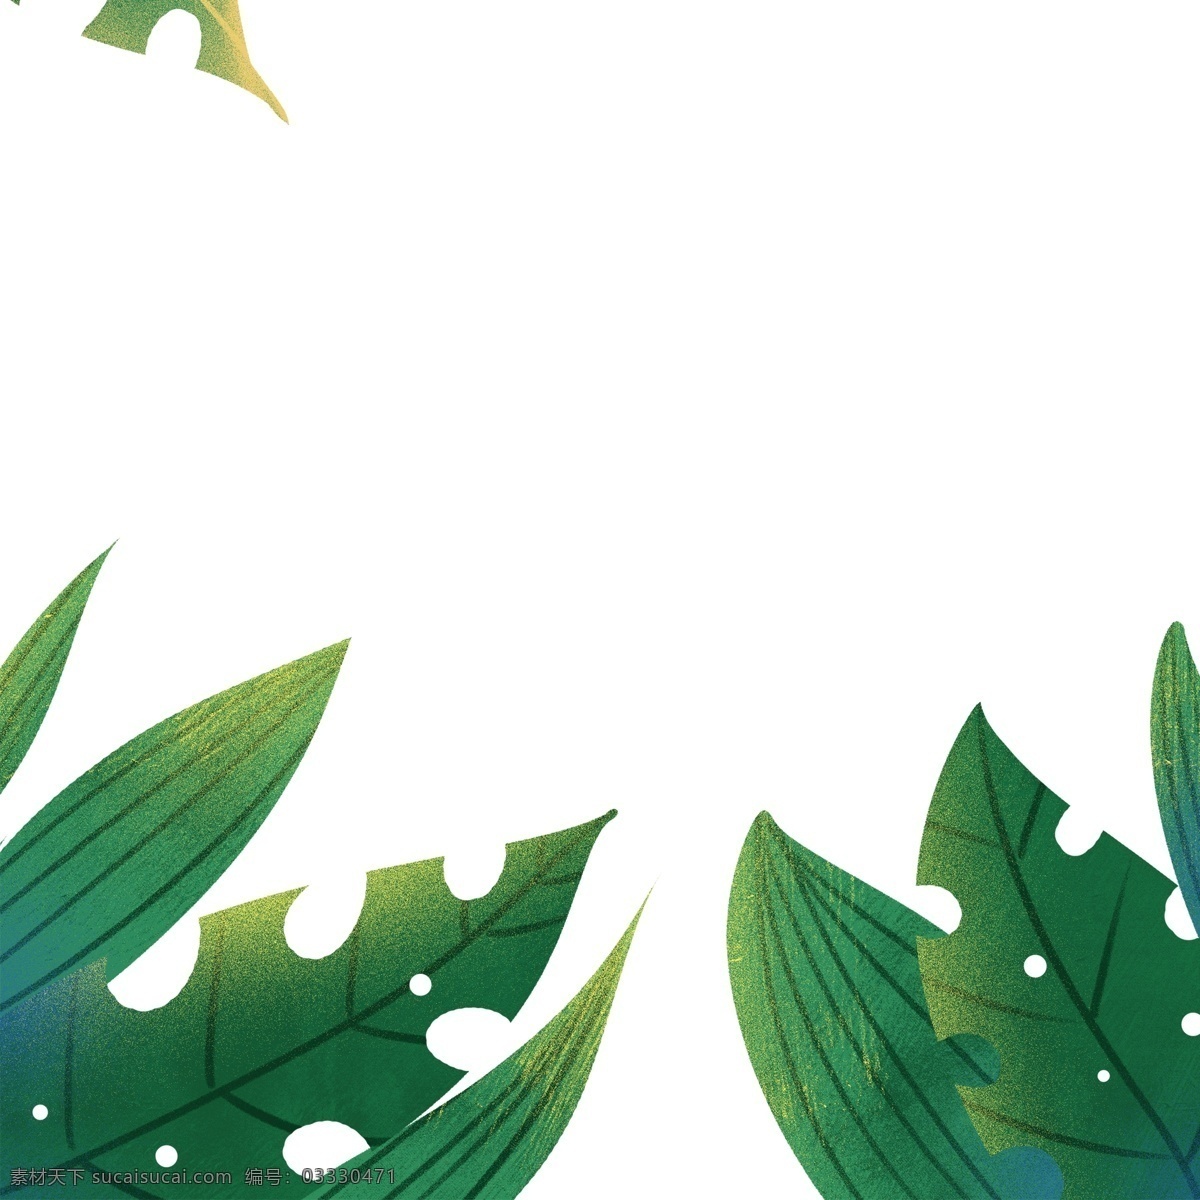 夏日 绿叶 植物 装饰 草丛 叶子 卡通 彩色 小清新 创意 手绘 绘画元素 现代 简约 图案